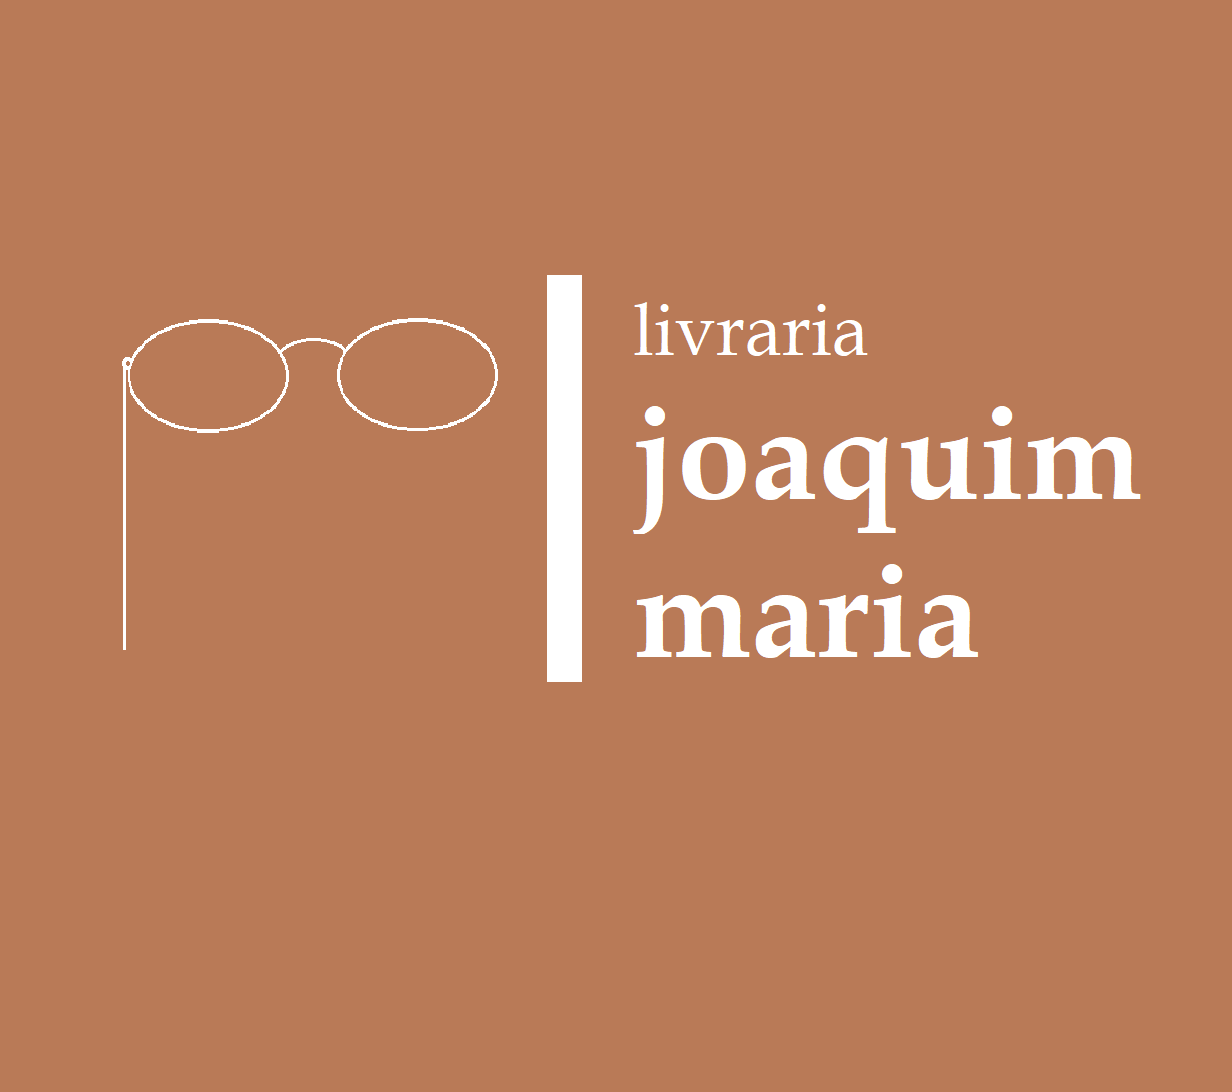 Livraria Joaquim Maria